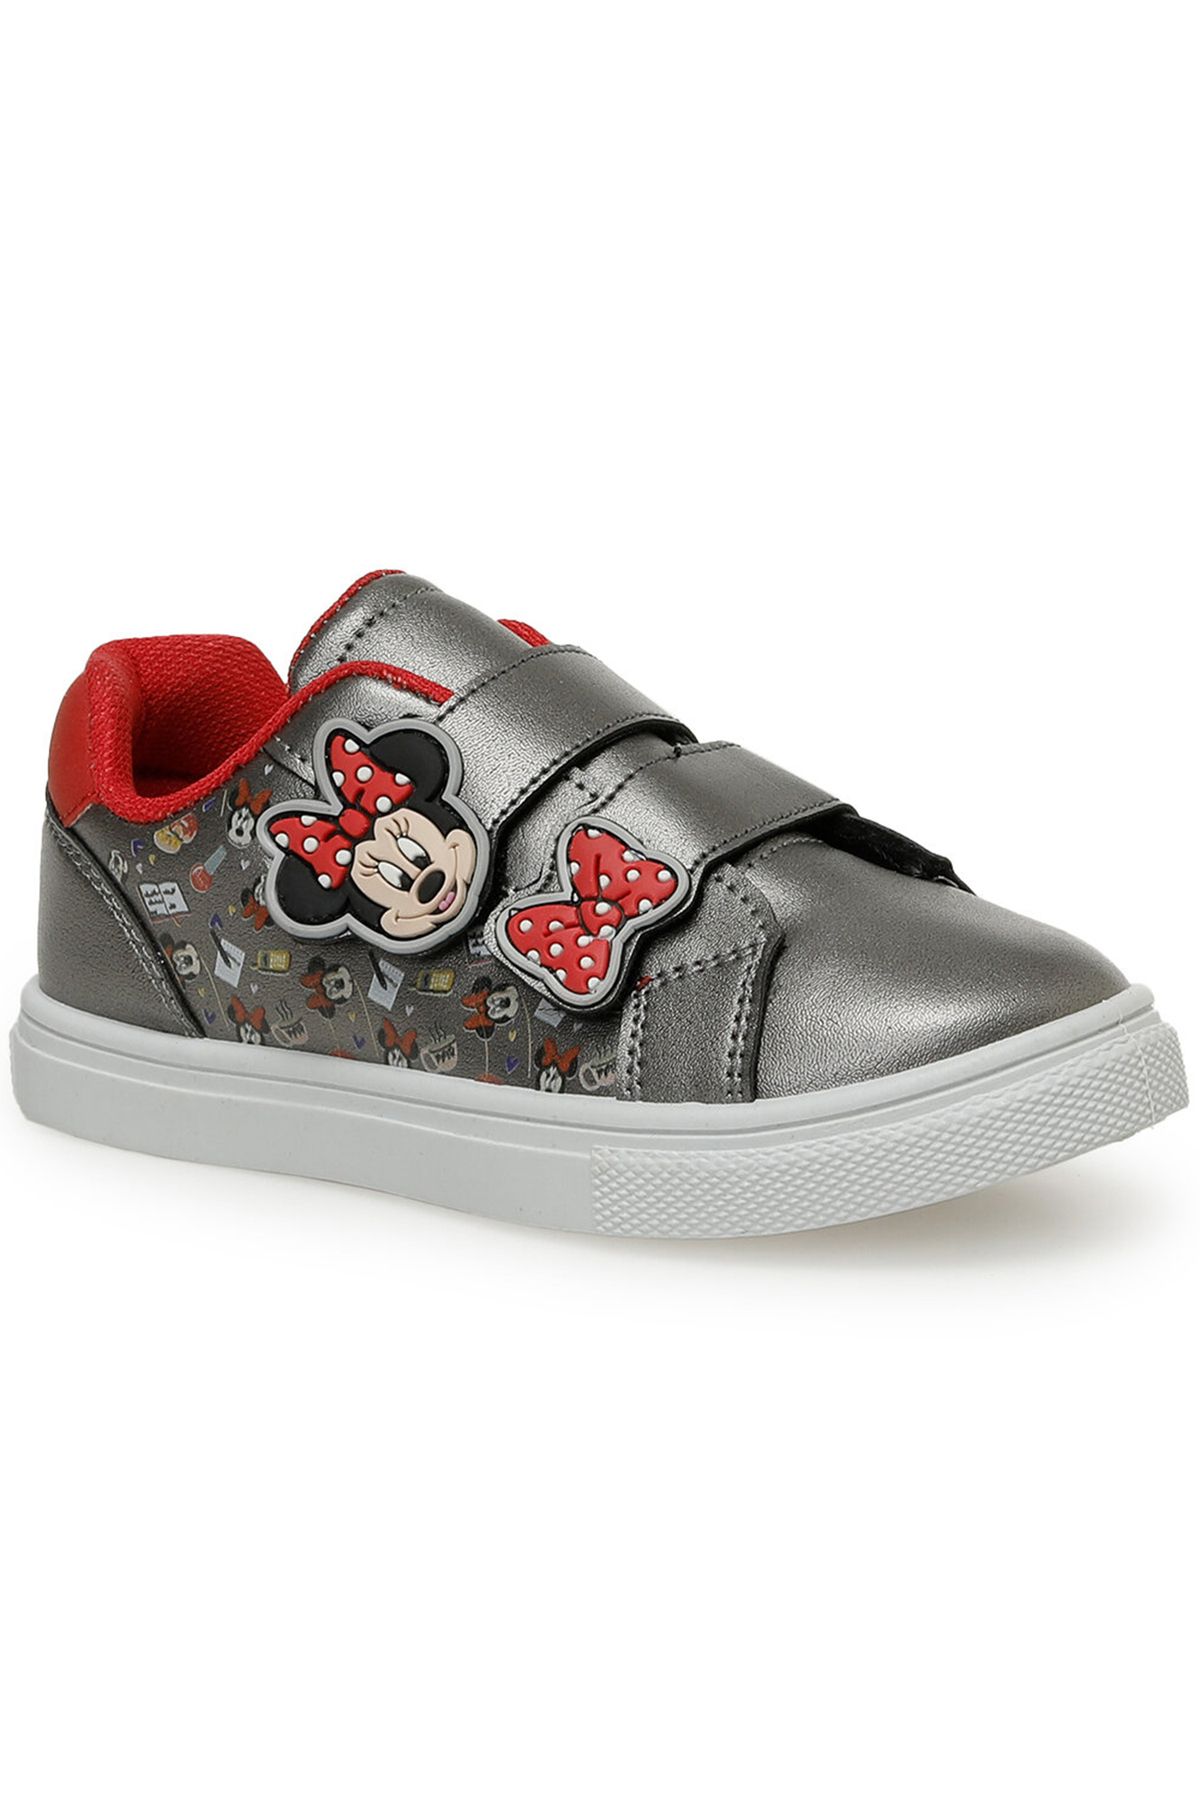 Mickey Mouse Borind Lisanslı Rahat Cırtlı Kız Çocuk Sneaker